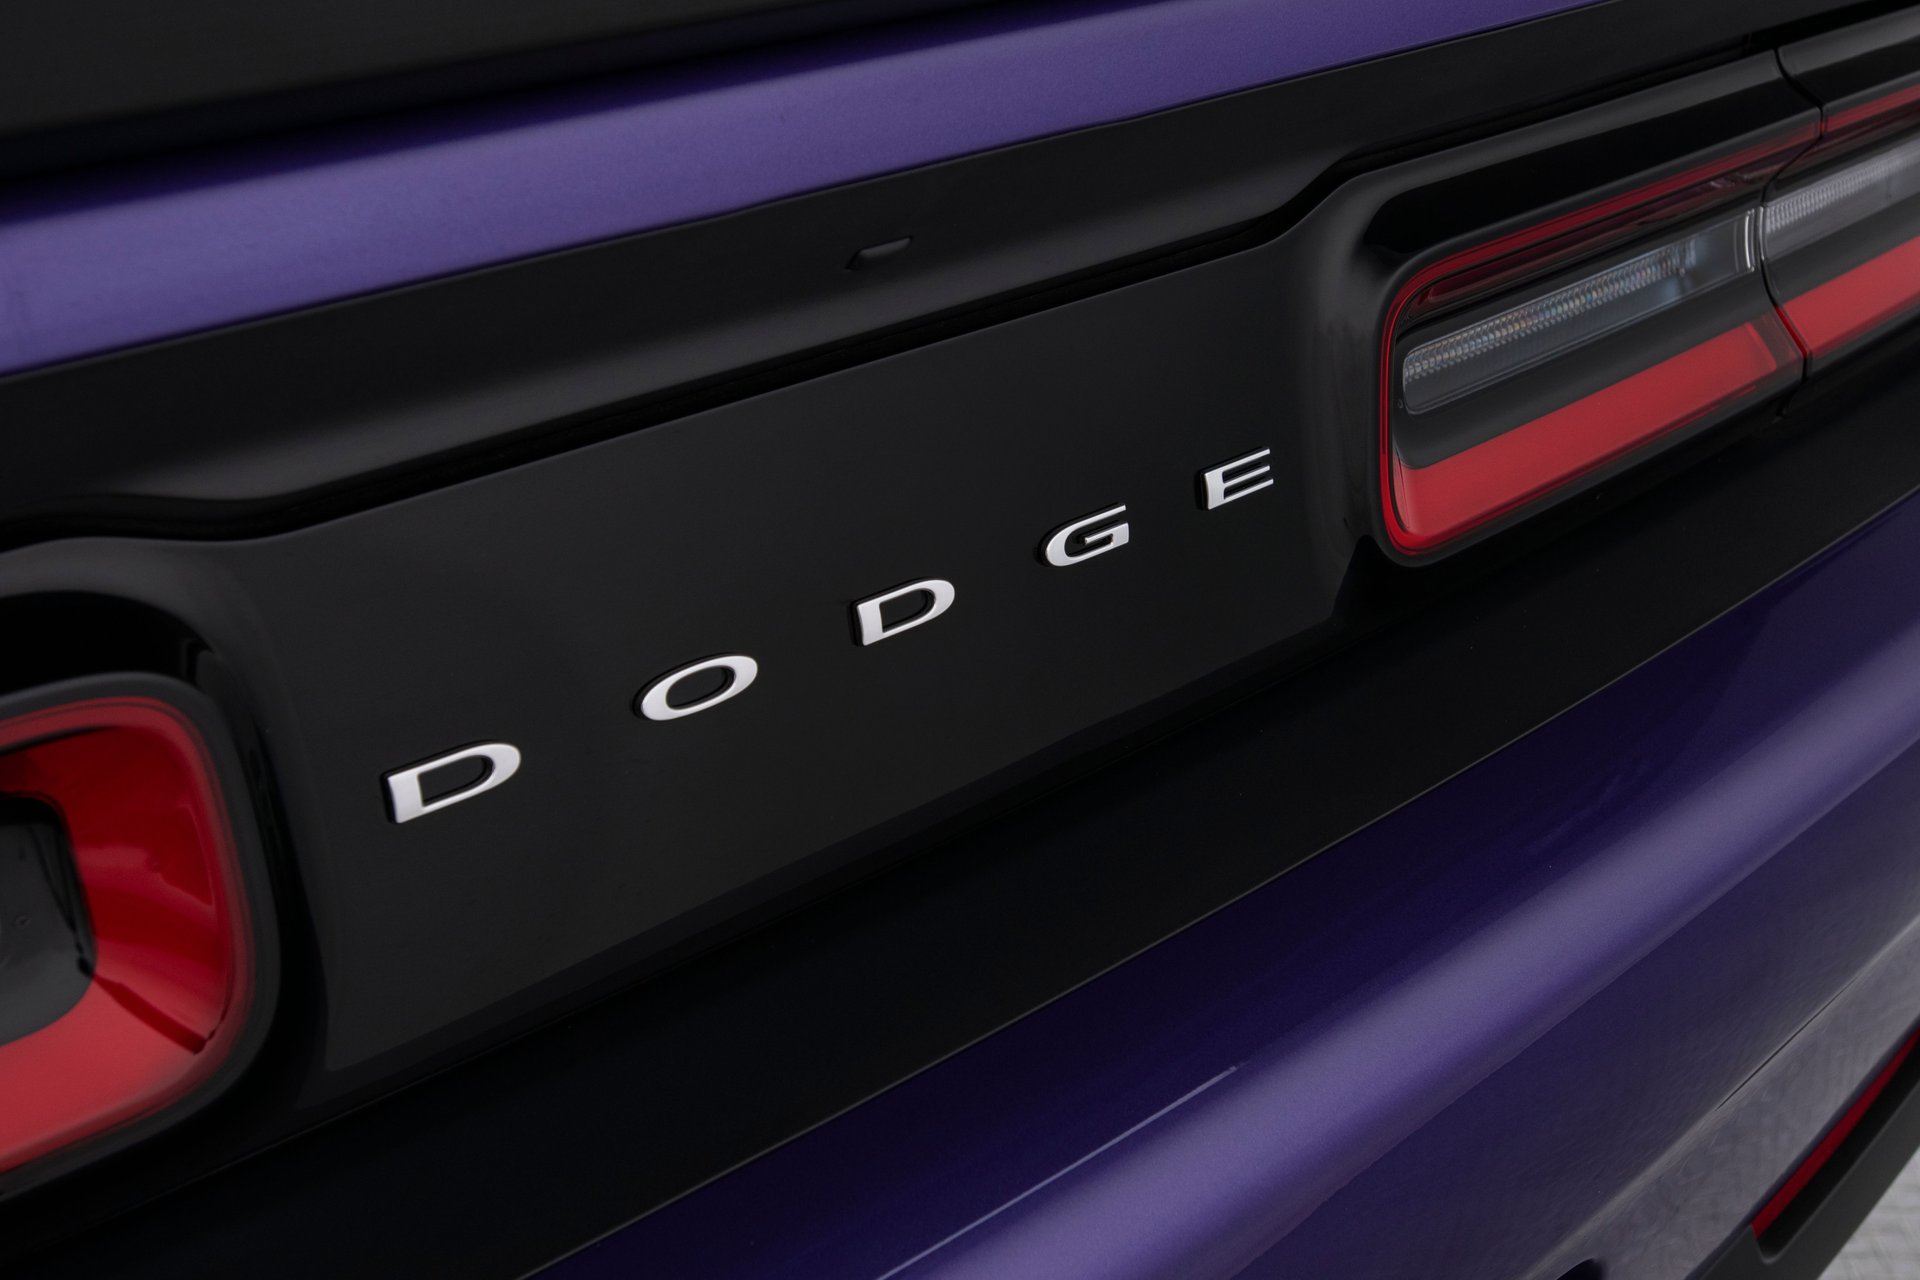 For Sale 2016 Dodge Challenger